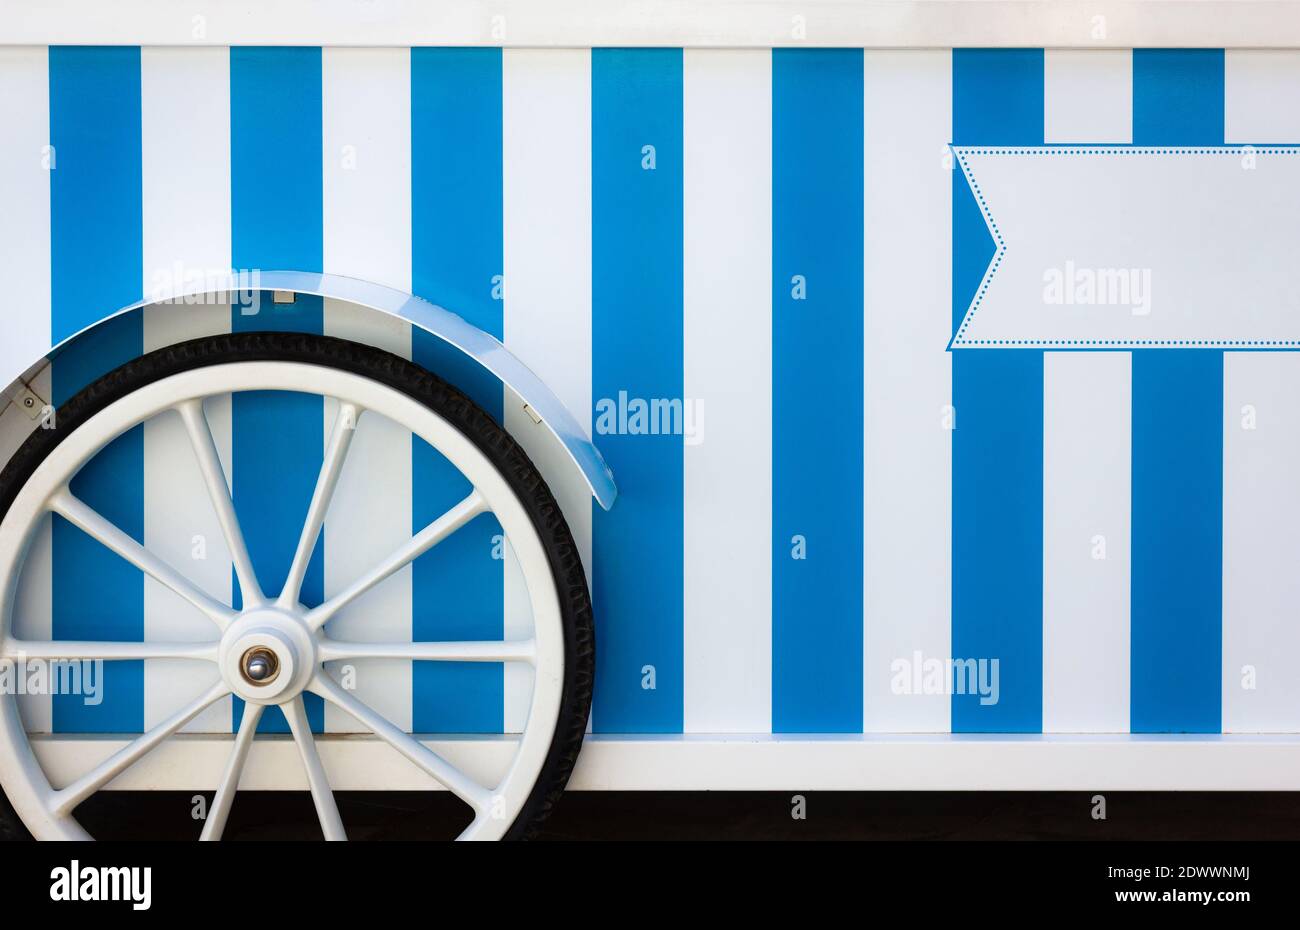 Roue de chariot de glace vintage à rayures bleues et blanches. Camion du fournisseur de rue, véhicule commercial servant de point de vente au détail mobile Banque D'Images